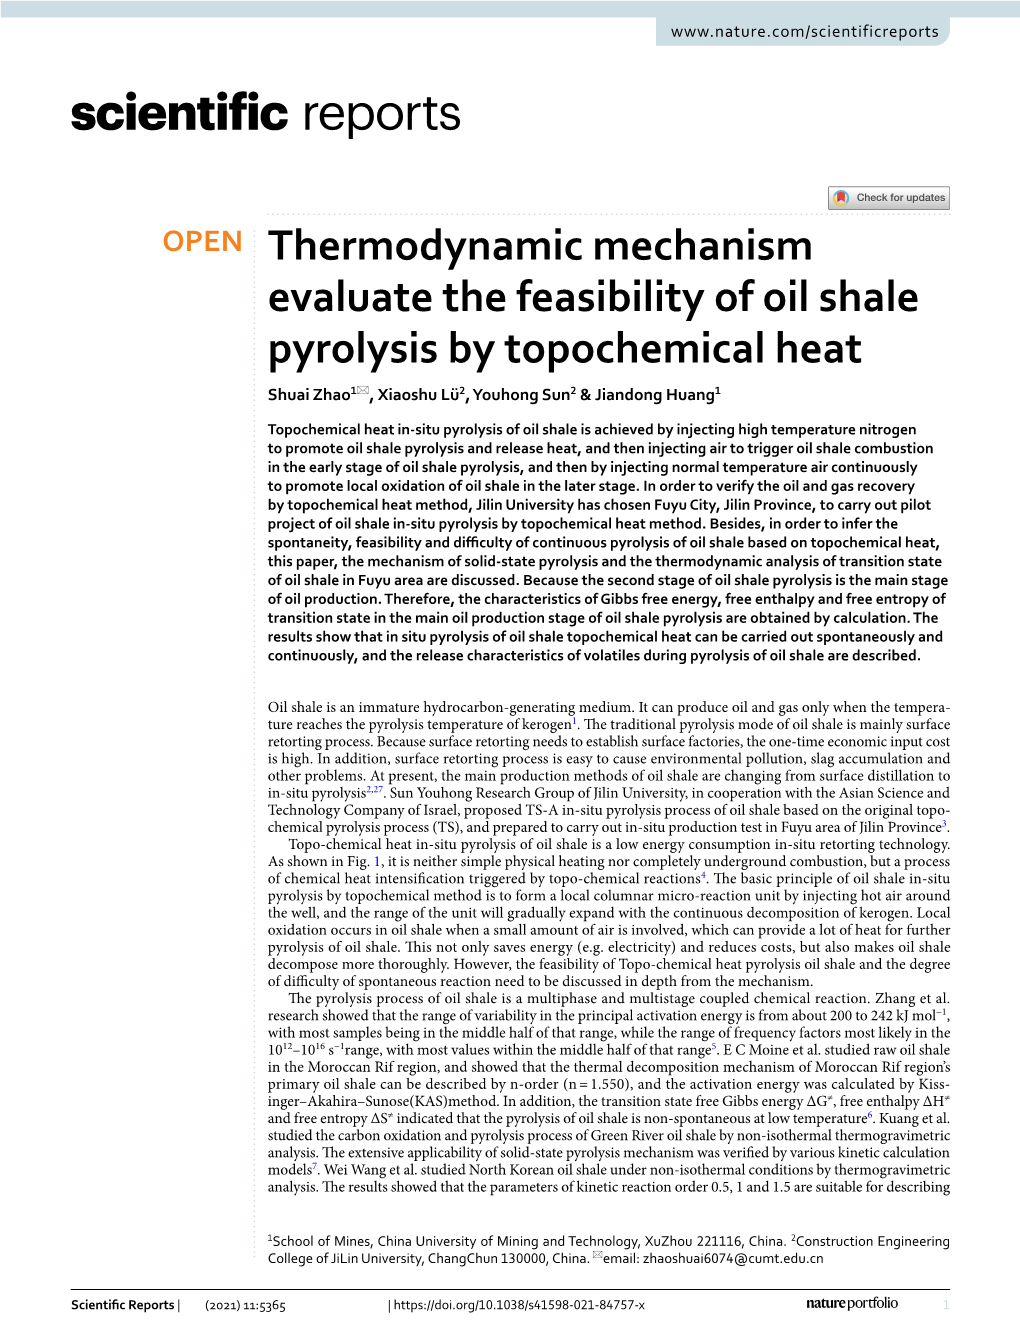 Thermodynamic Mechanism Evaluate the Feasibility of Oil Shale Pyrolysis by Topochemical Heat Shuai Zhao1*, Xiaoshu Lü2, Youhong Sun2 & Jiandong Huang1